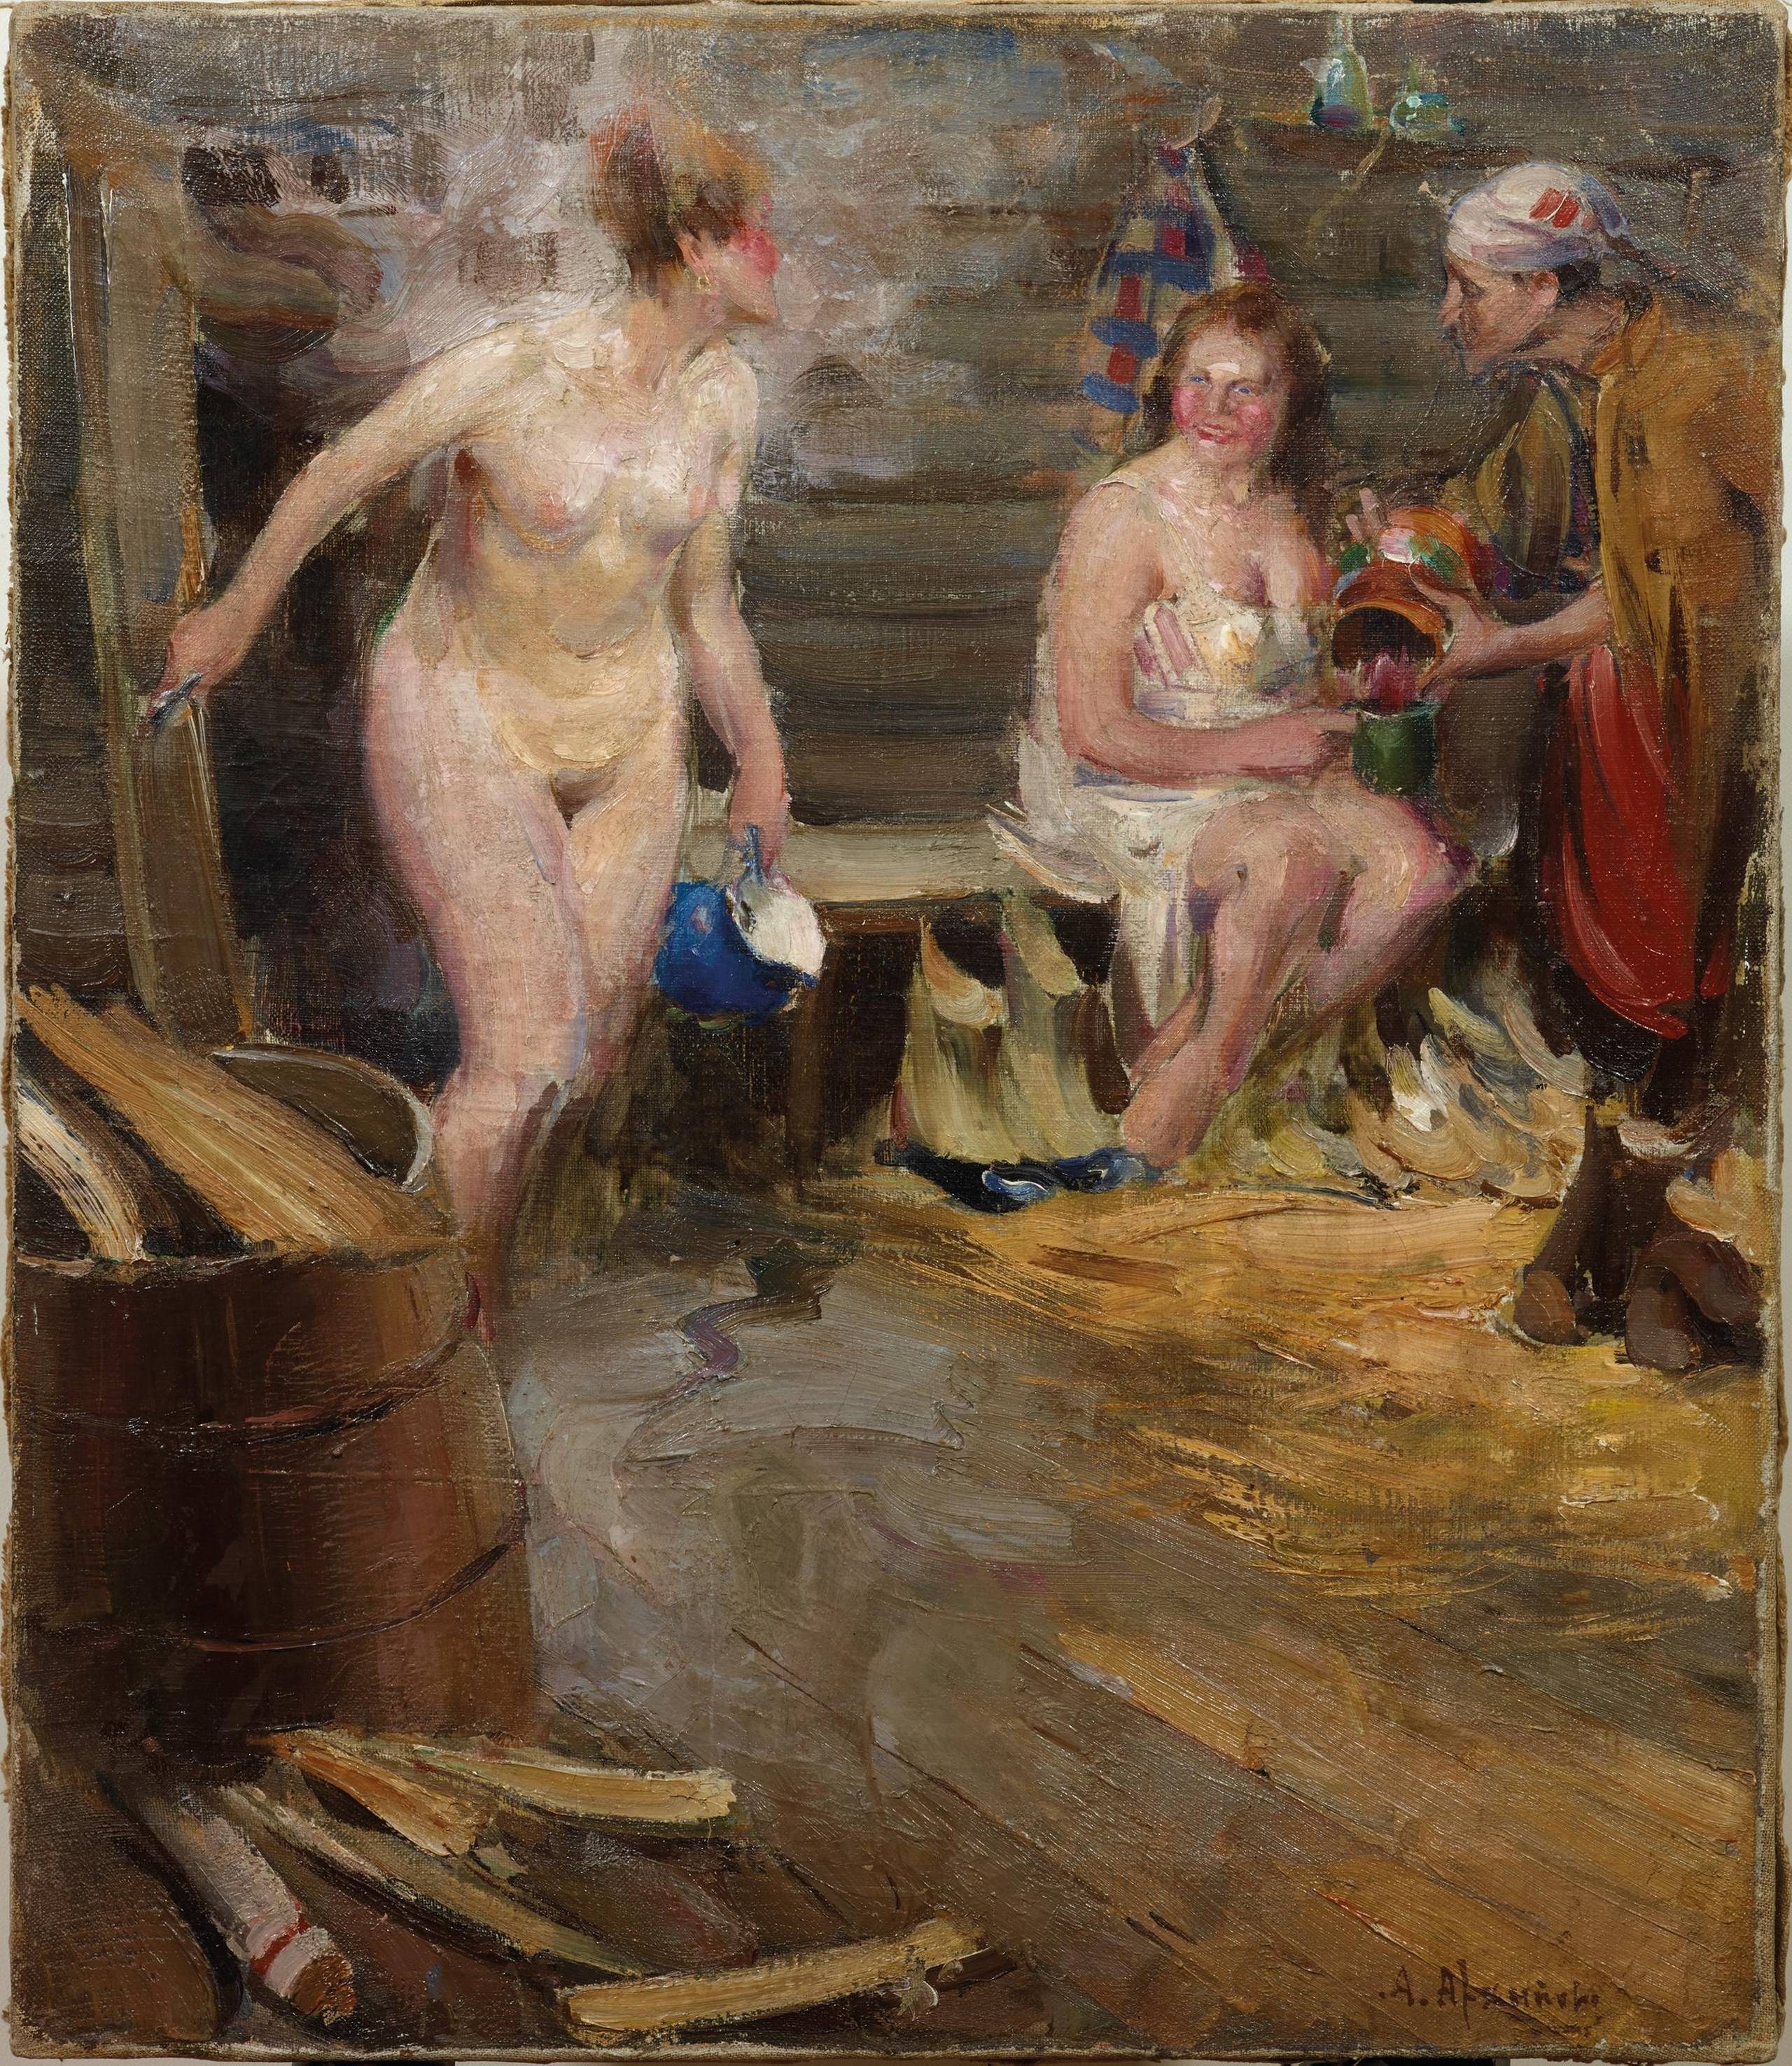 женщины купаются в сауне голыми фото 38